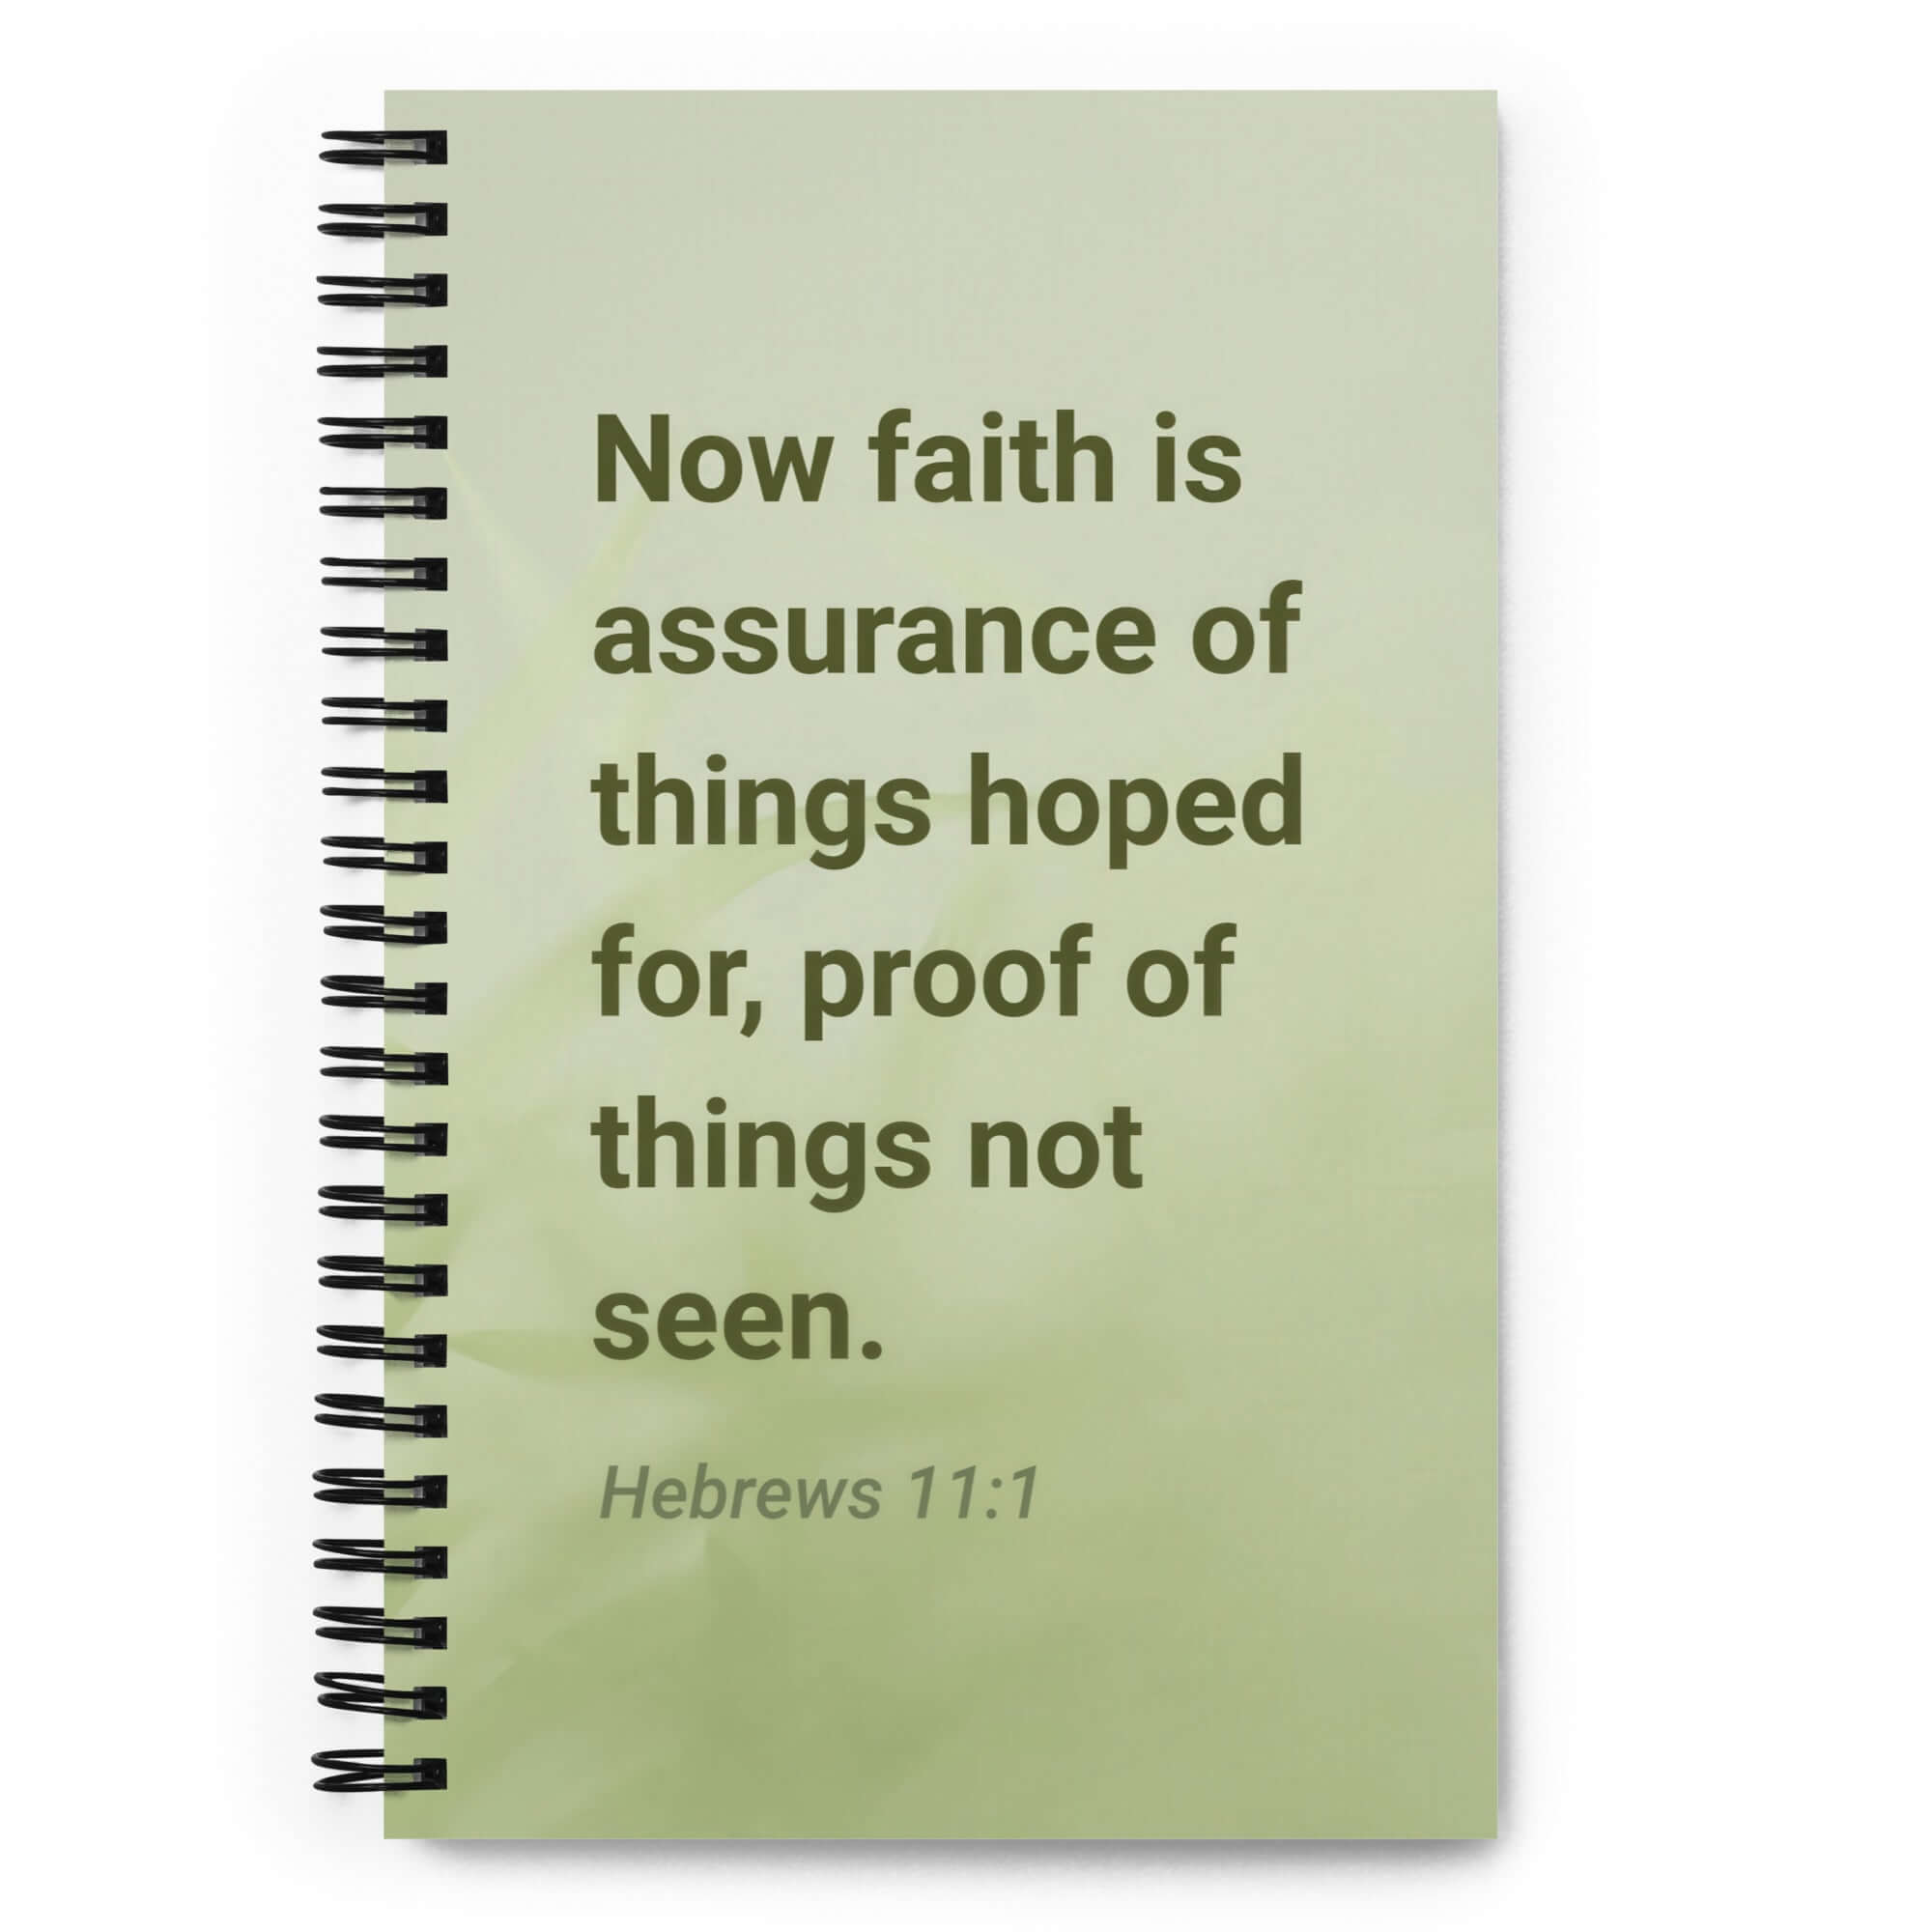 Heb 11:1 - Bible Verse, faith is assurance Spiral Notebook